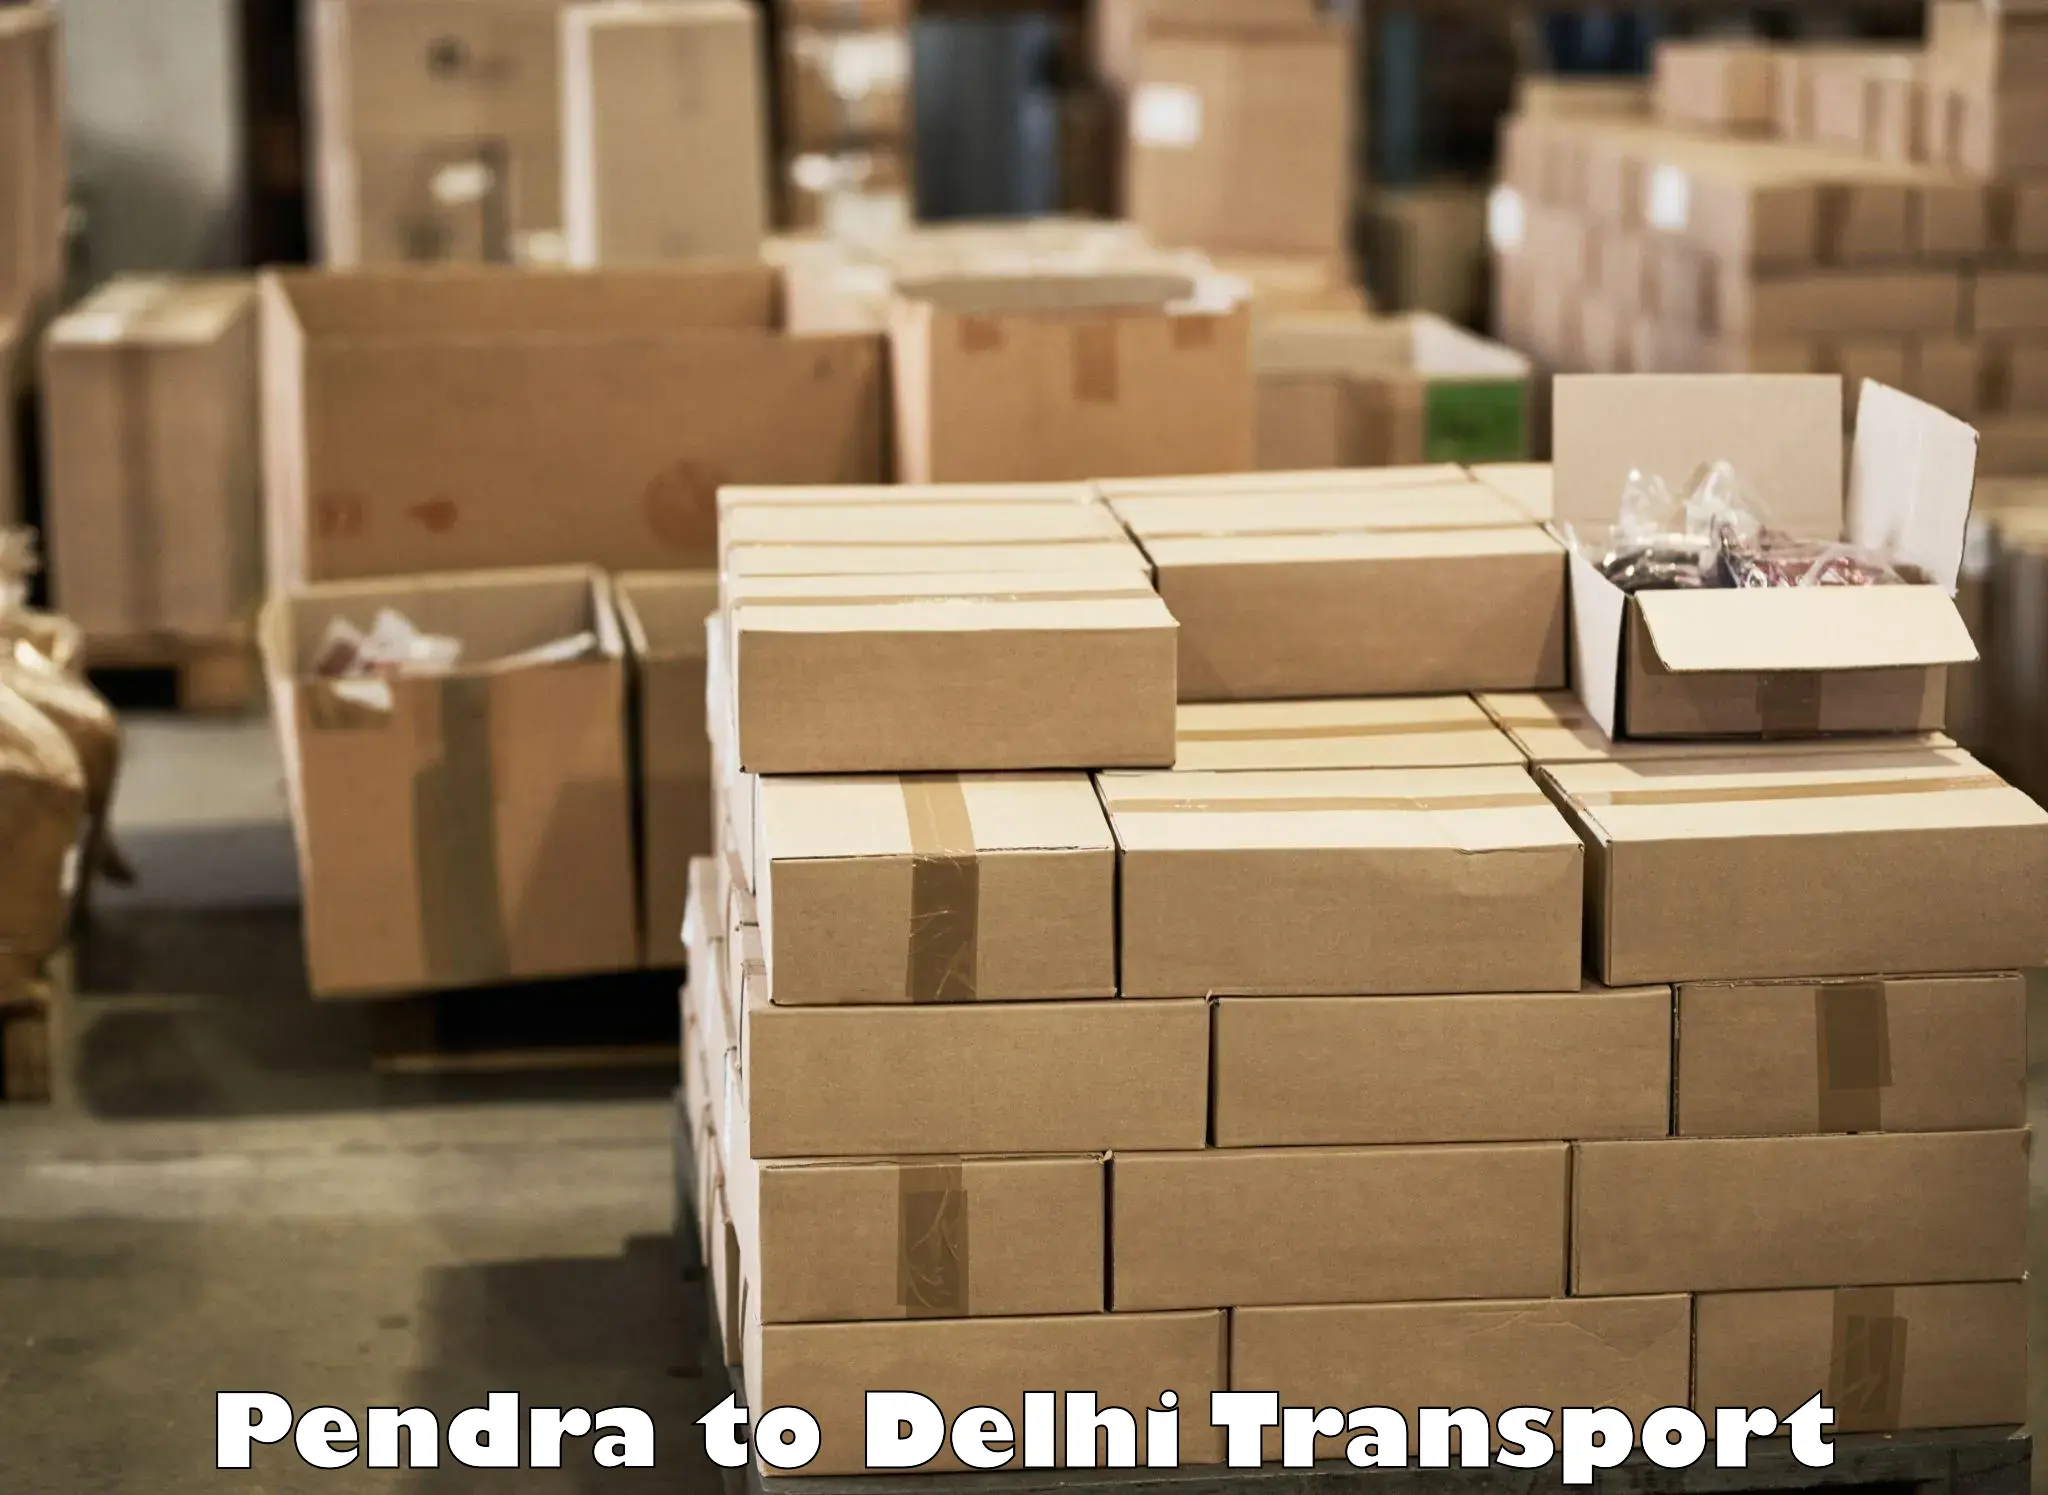 Furniture transport service Pendra to Delhi